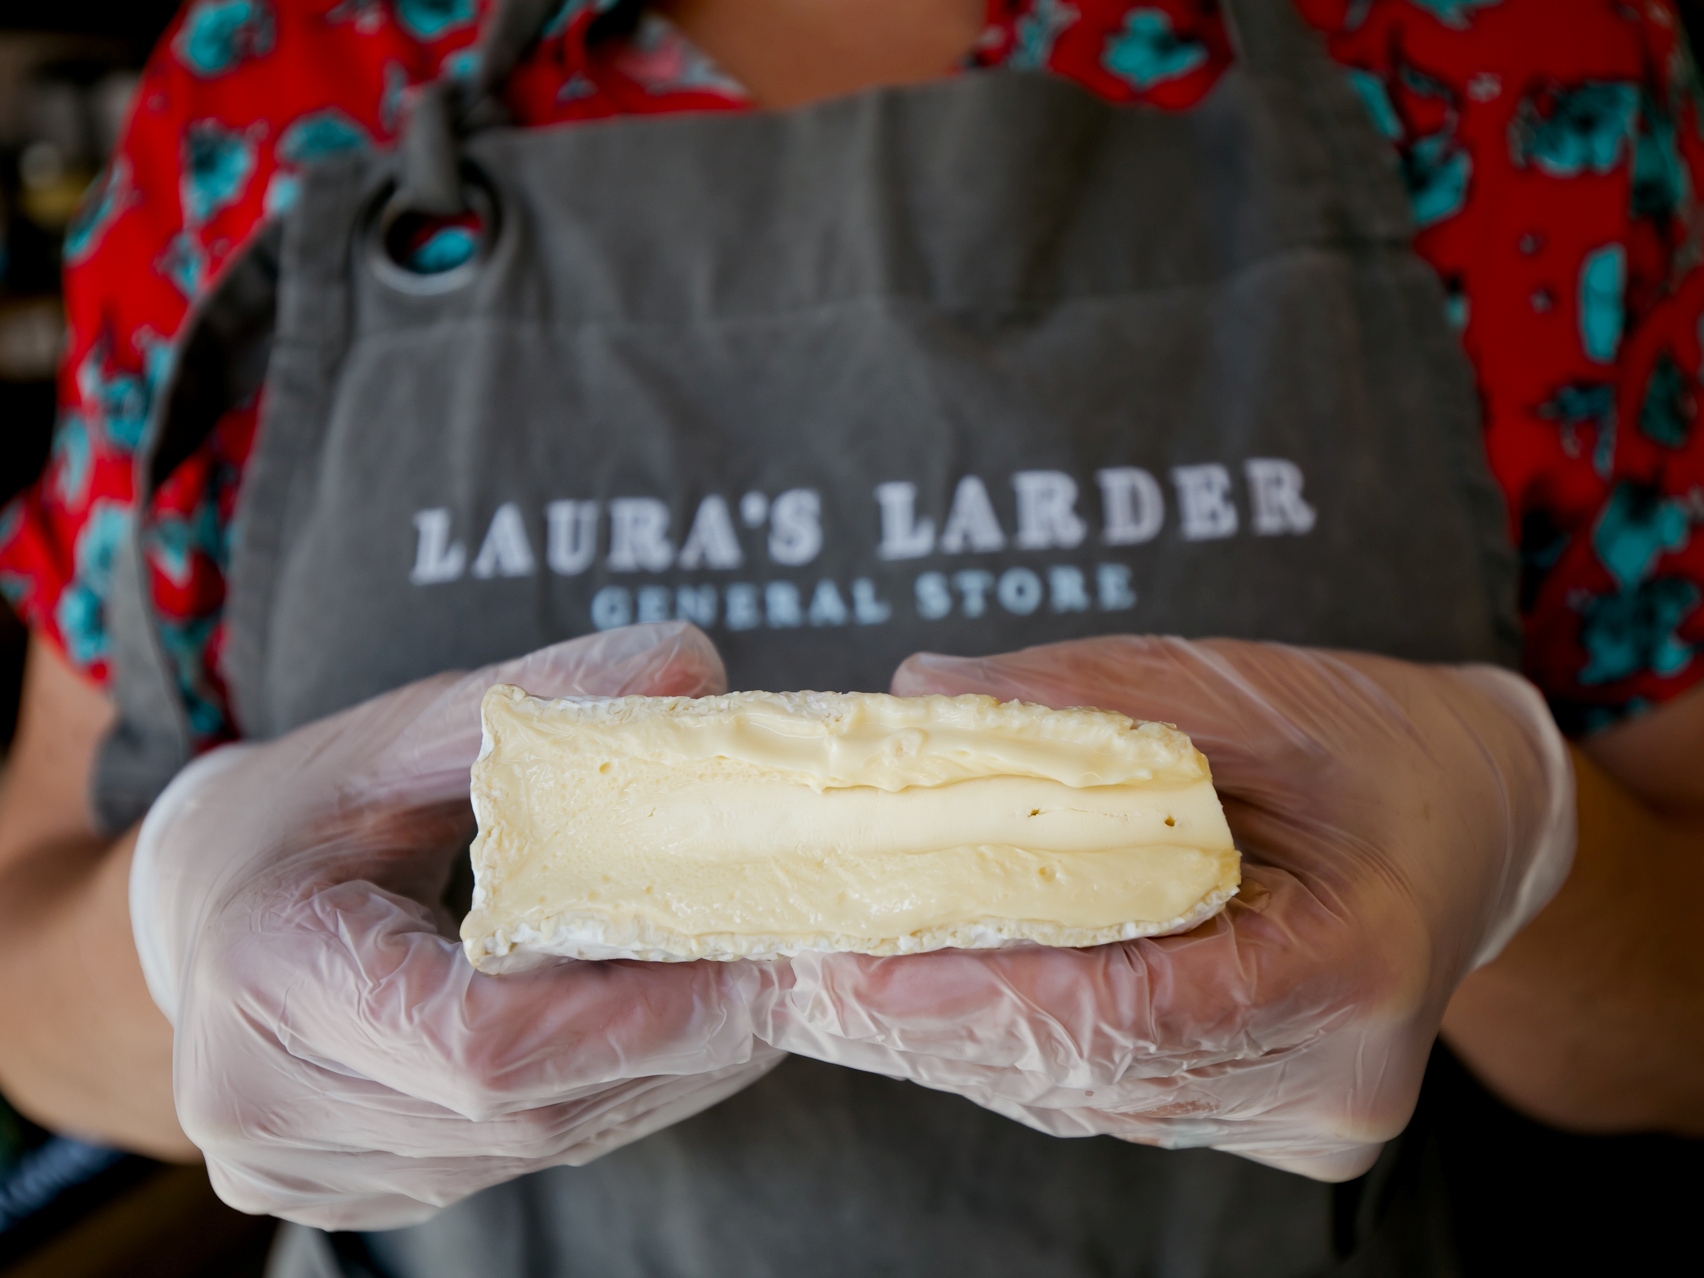 Laura's Larder cheese